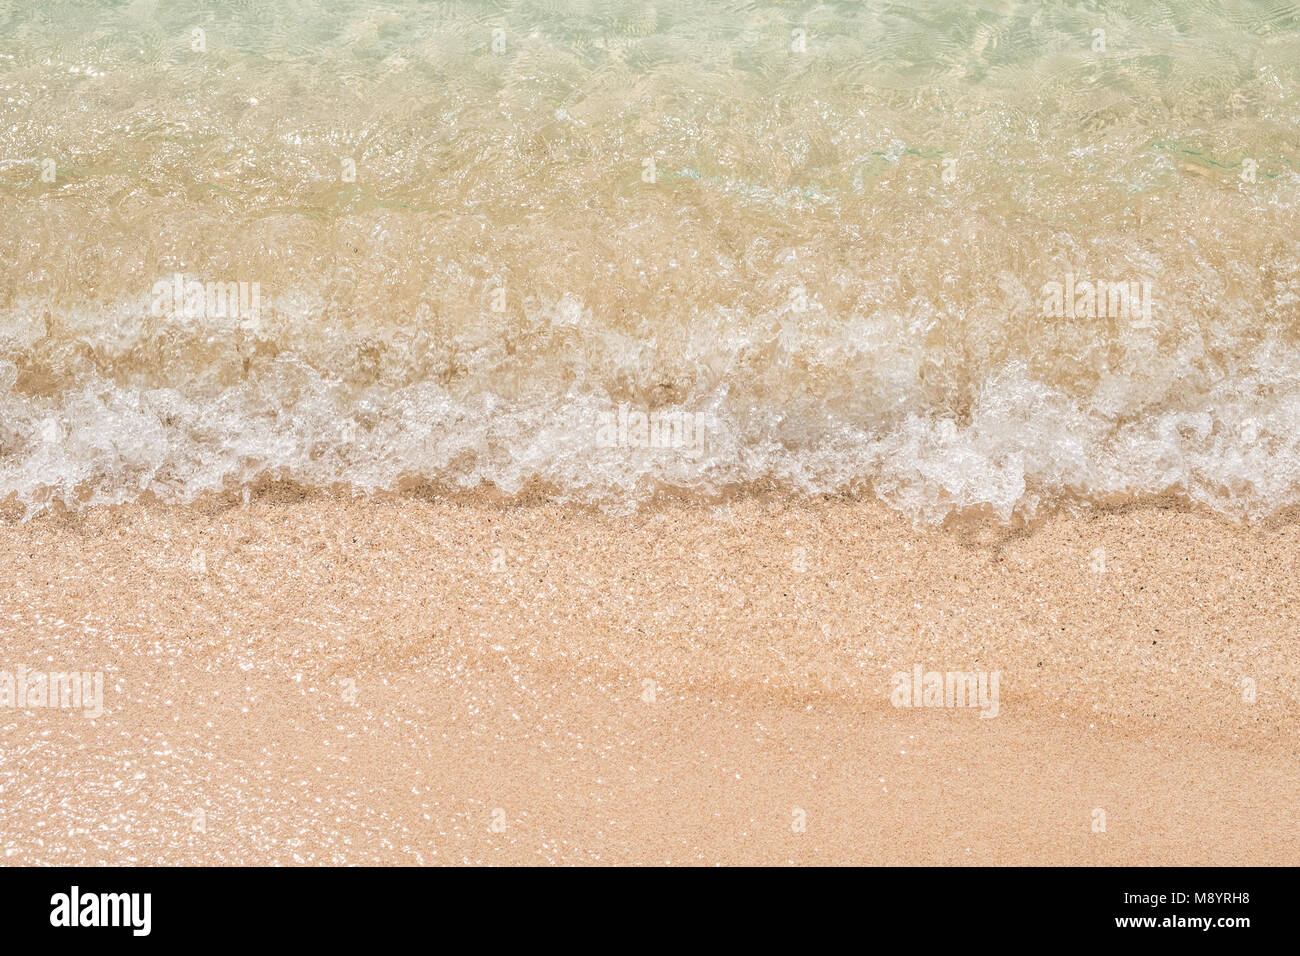 Eau macro , plage de sable blanc propre closeup Banque D'Images